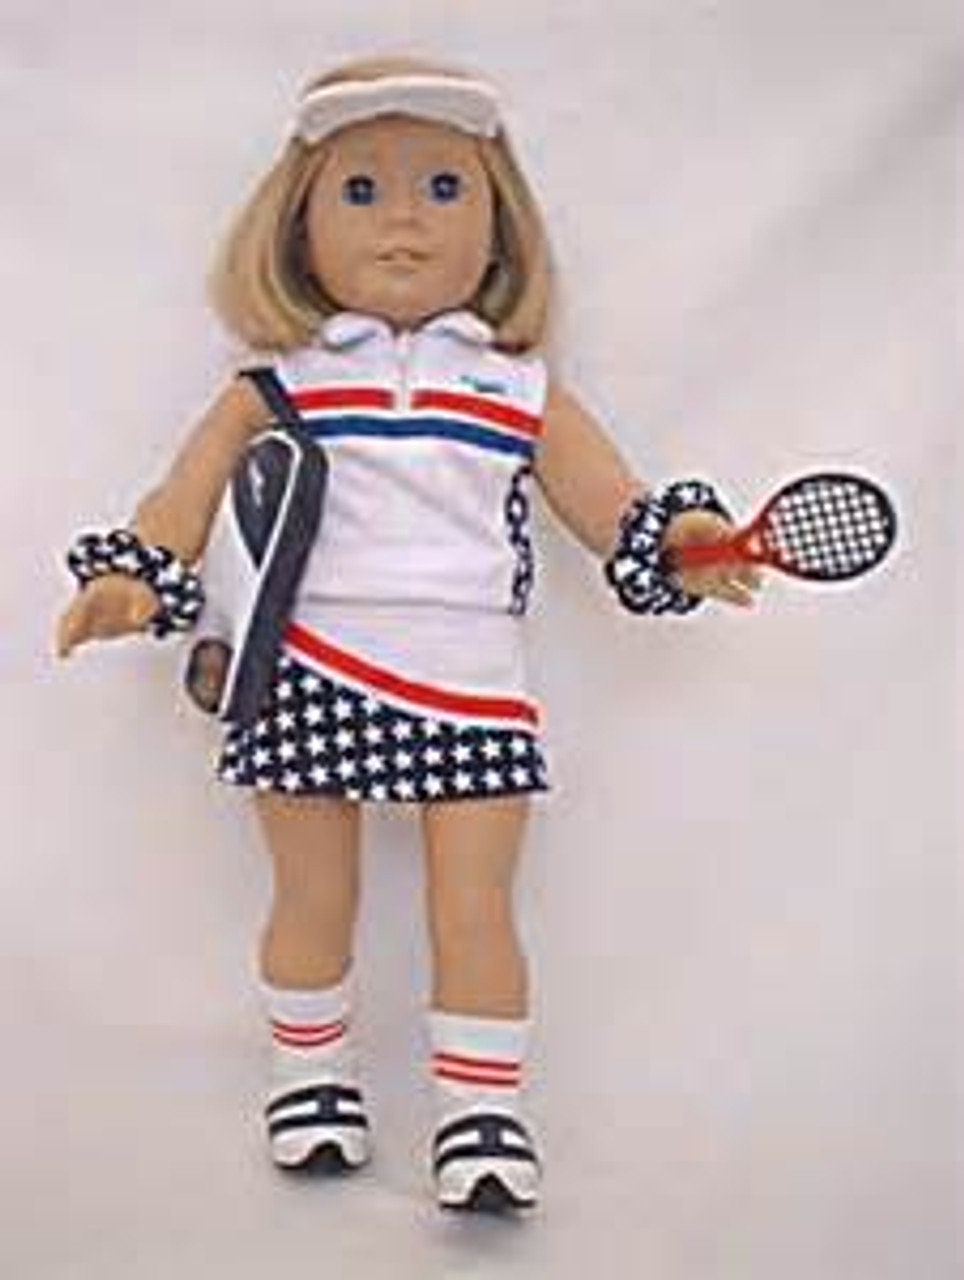 Tennis Uniform for 18 inch American Girl Dolls